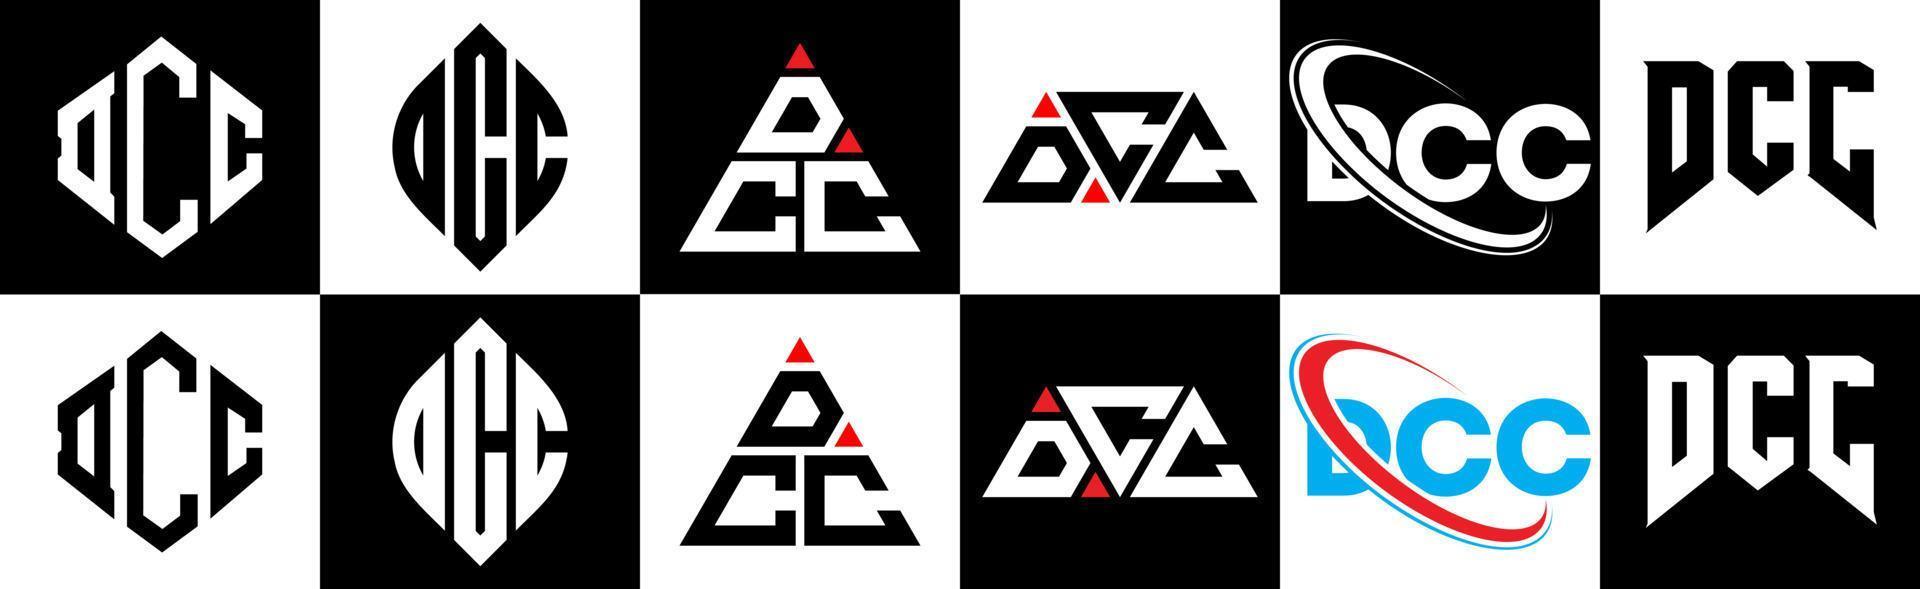 création de logo de lettre dcc en six styles. dcc polygone, cercle, triangle, hexagone, style plat et simple avec logo de lettre de variation de couleur noir et blanc dans un plan de travail. logo dcc minimaliste et classique vecteur